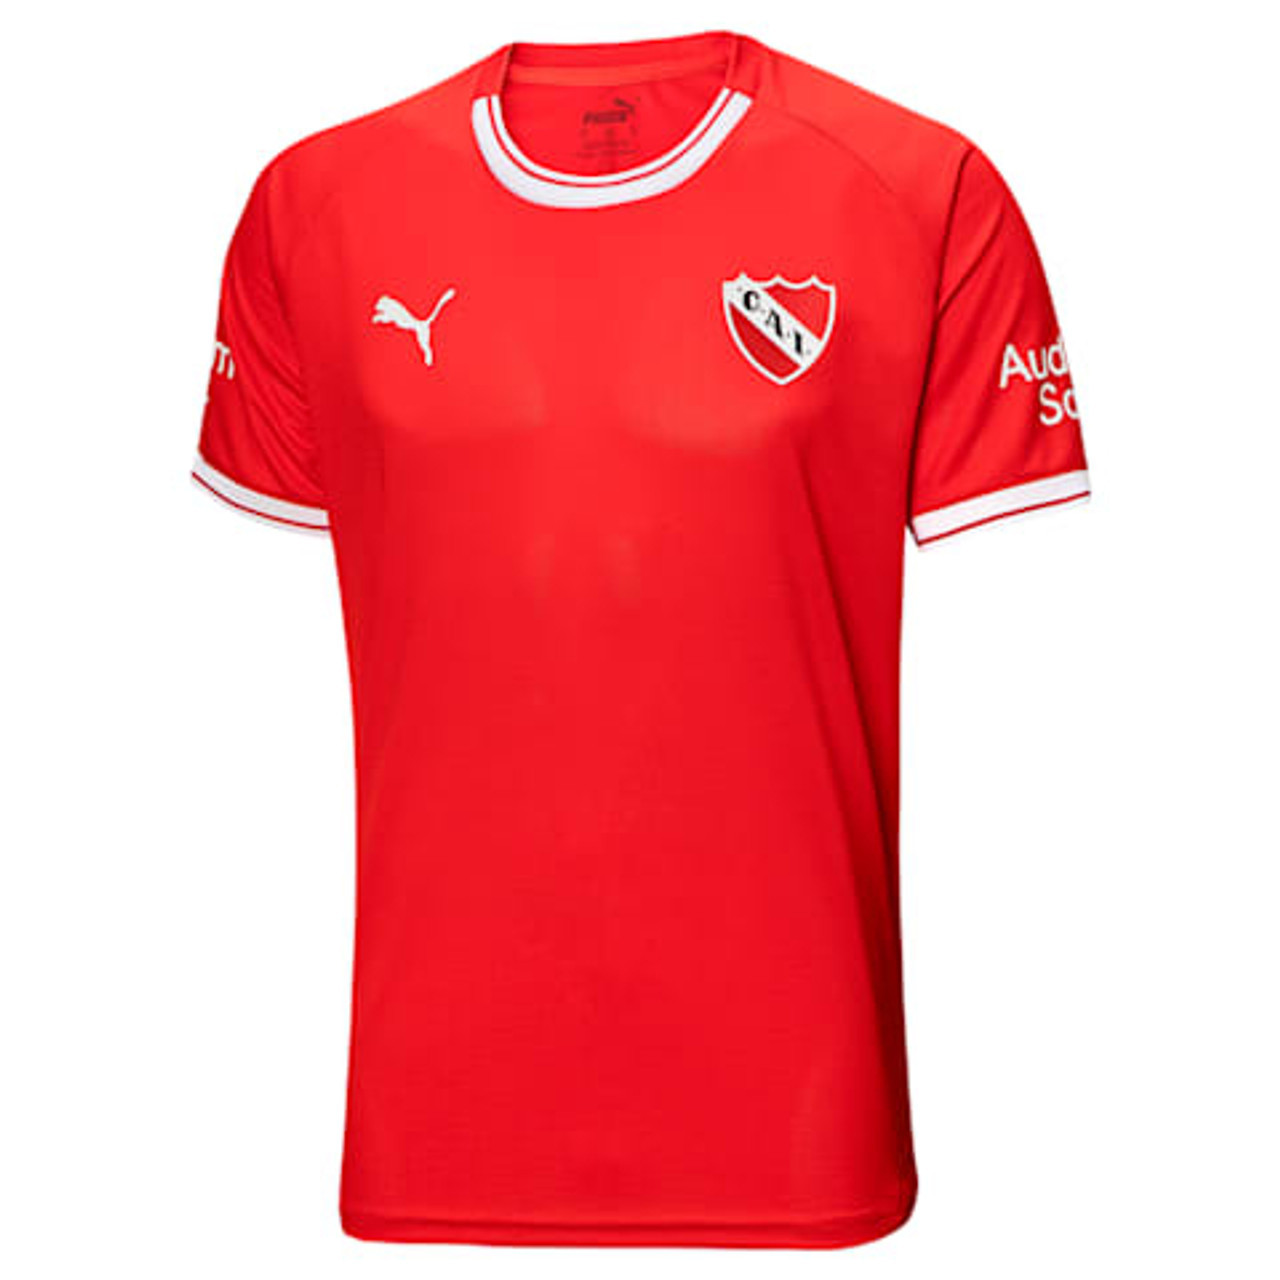 Puma lança terceiro uniforme do Independiente da Argentina - Show de Camisas